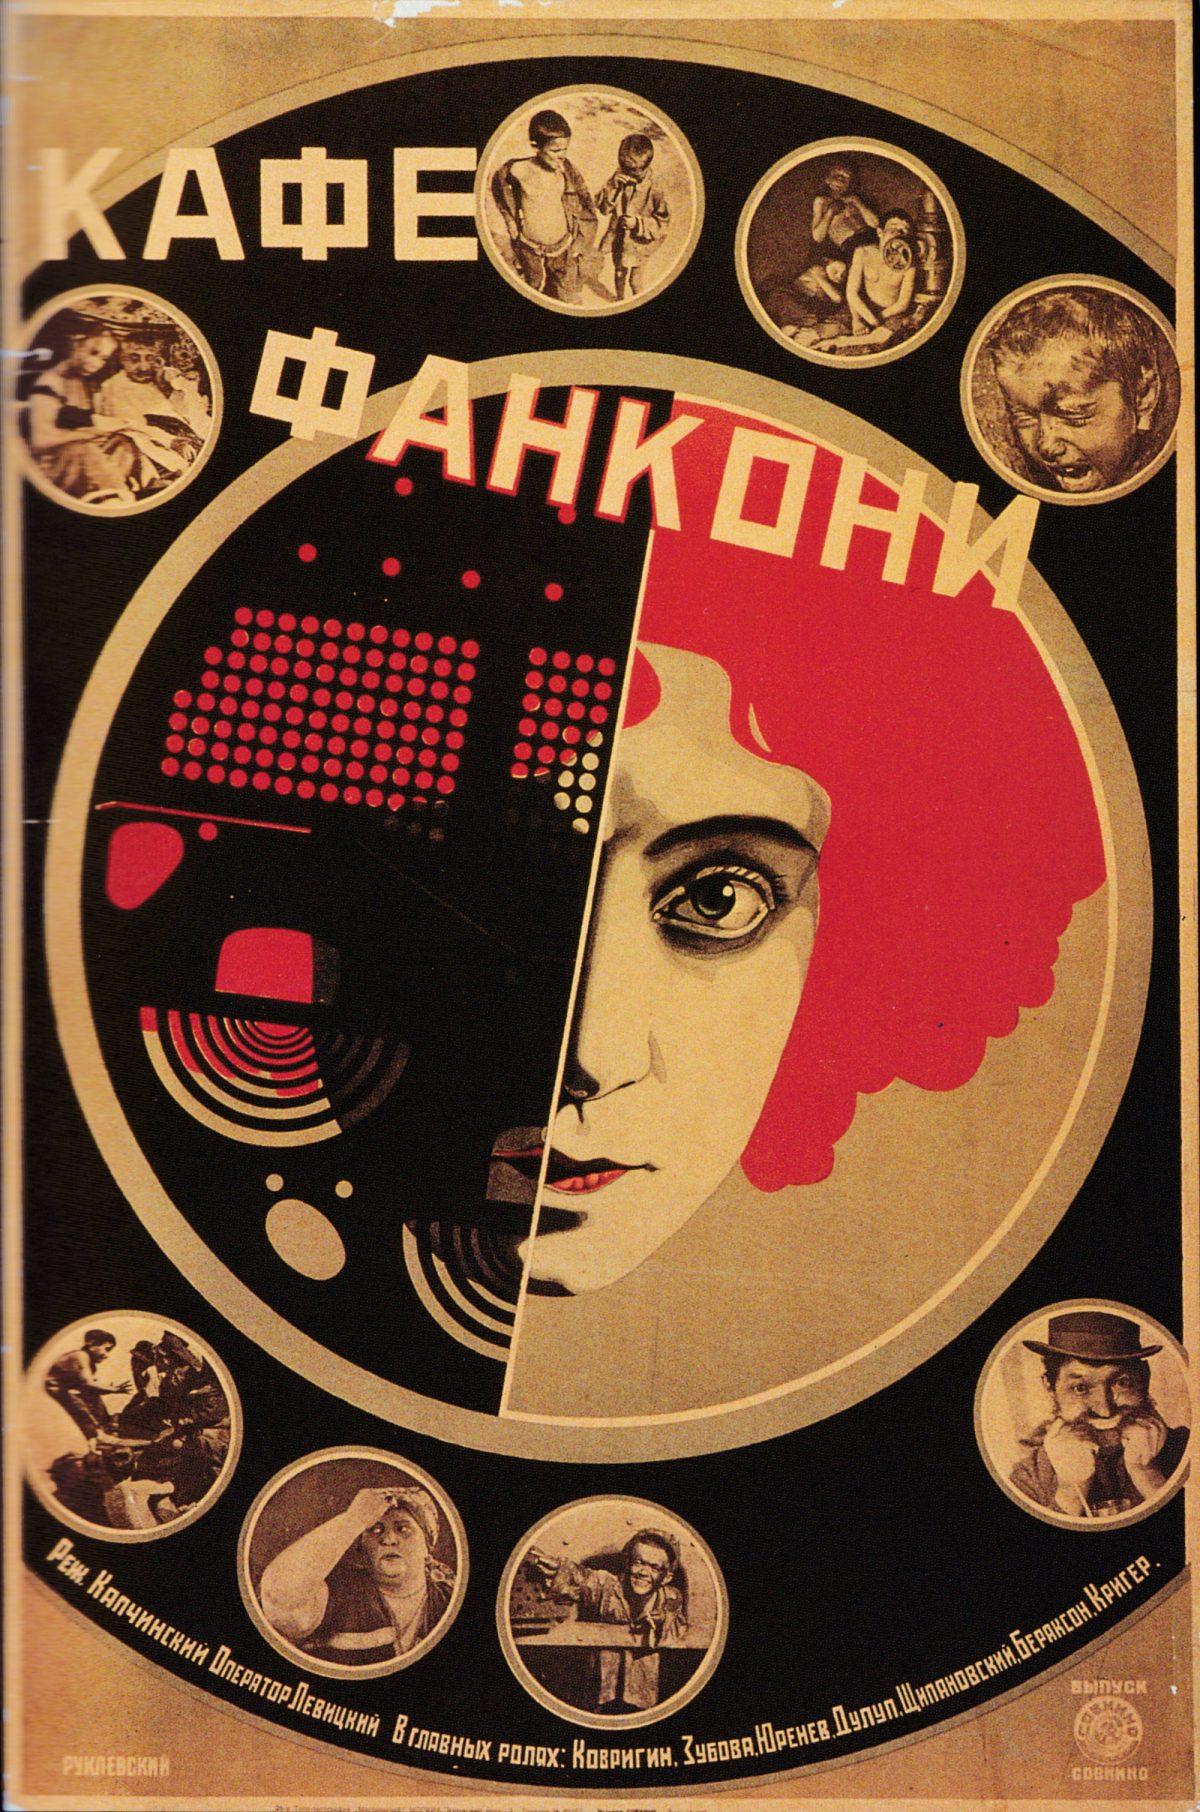 Des Affiches de films de l'Avant-Garde Soviétique